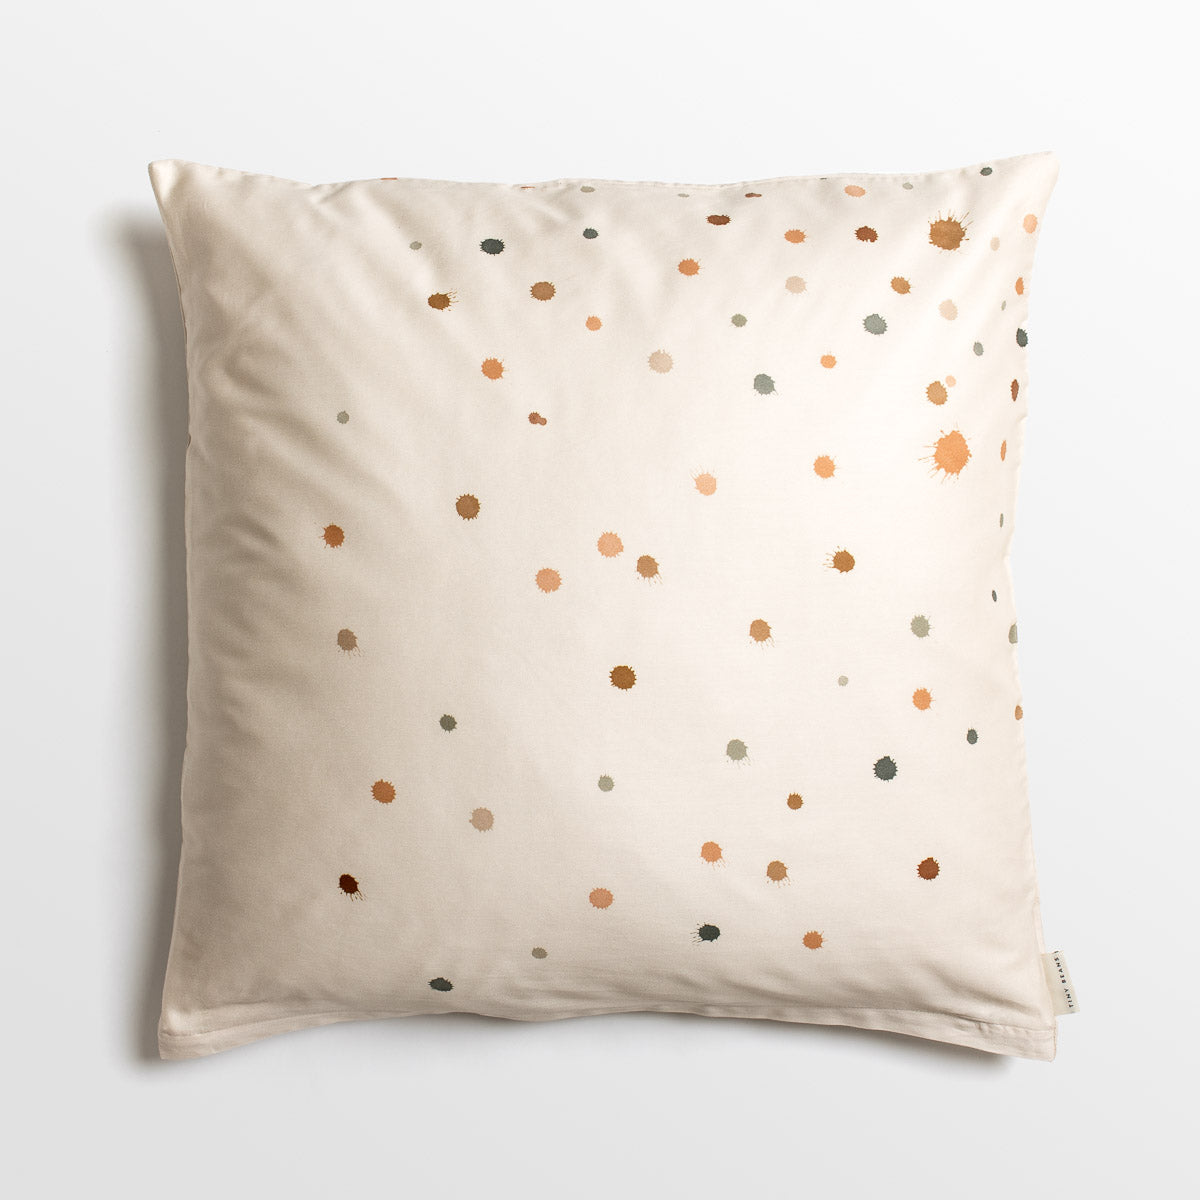 Pillowcase - Confetti, 80 x 80cm